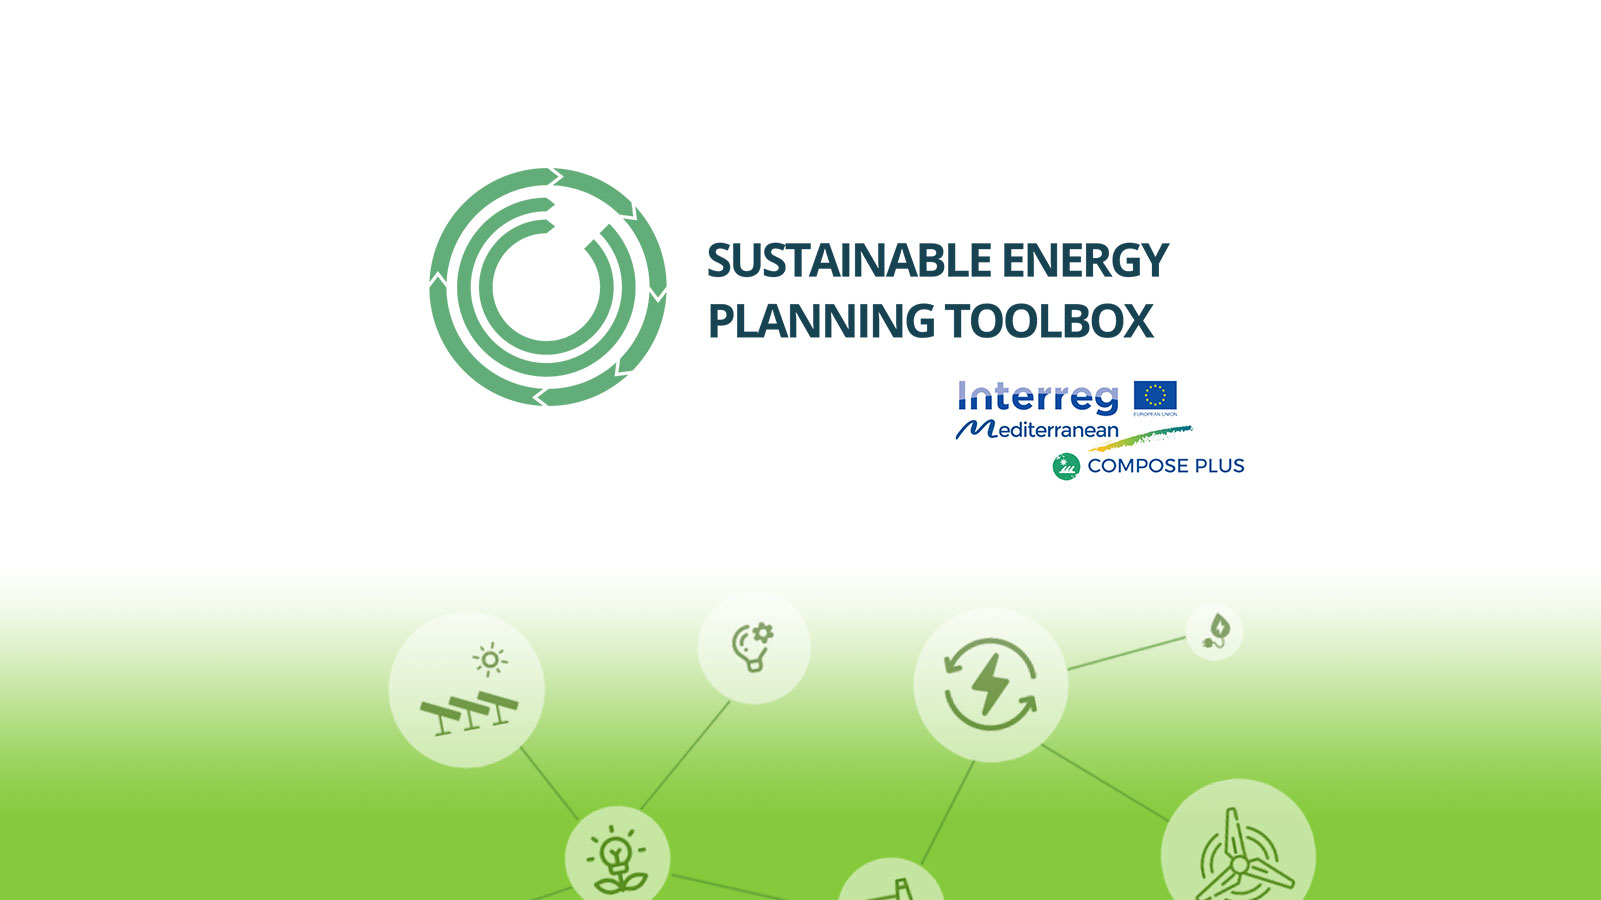 Progetto Compose Plus – Toolbox per i processi di pianificazione dell’energia sostenibile a livello comunale